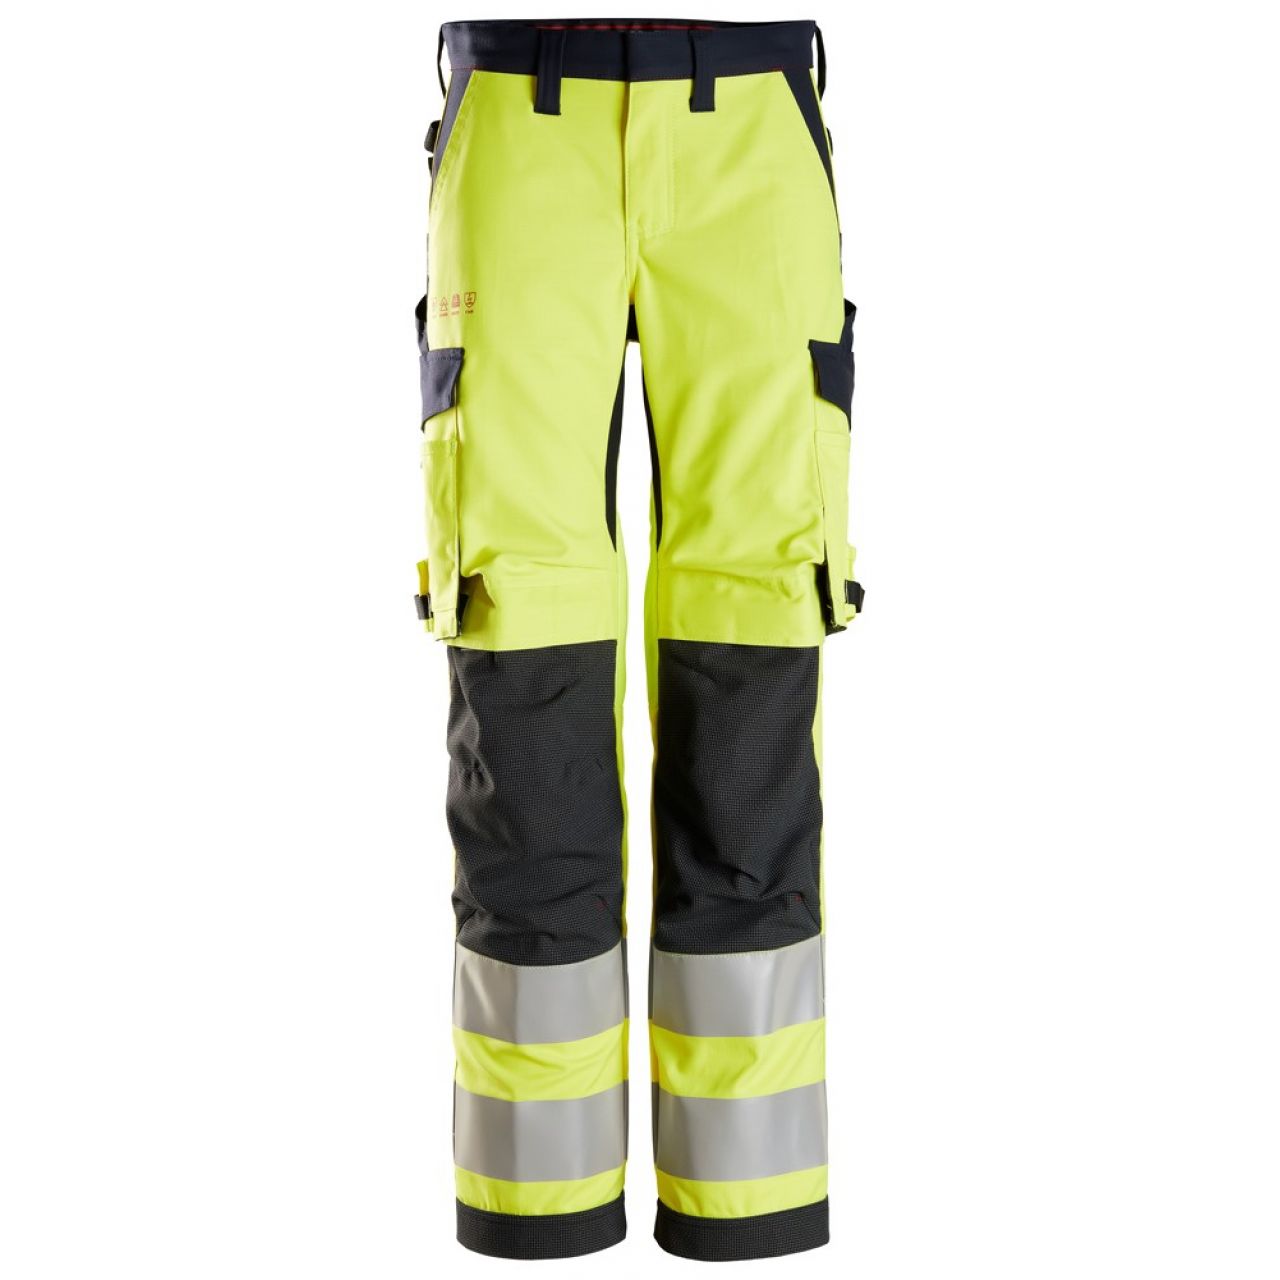 6760 Pantalones largos de trabajo de alta visibilidad clase 2 para mujer ProtecWork amarillo-azul marino talla 38